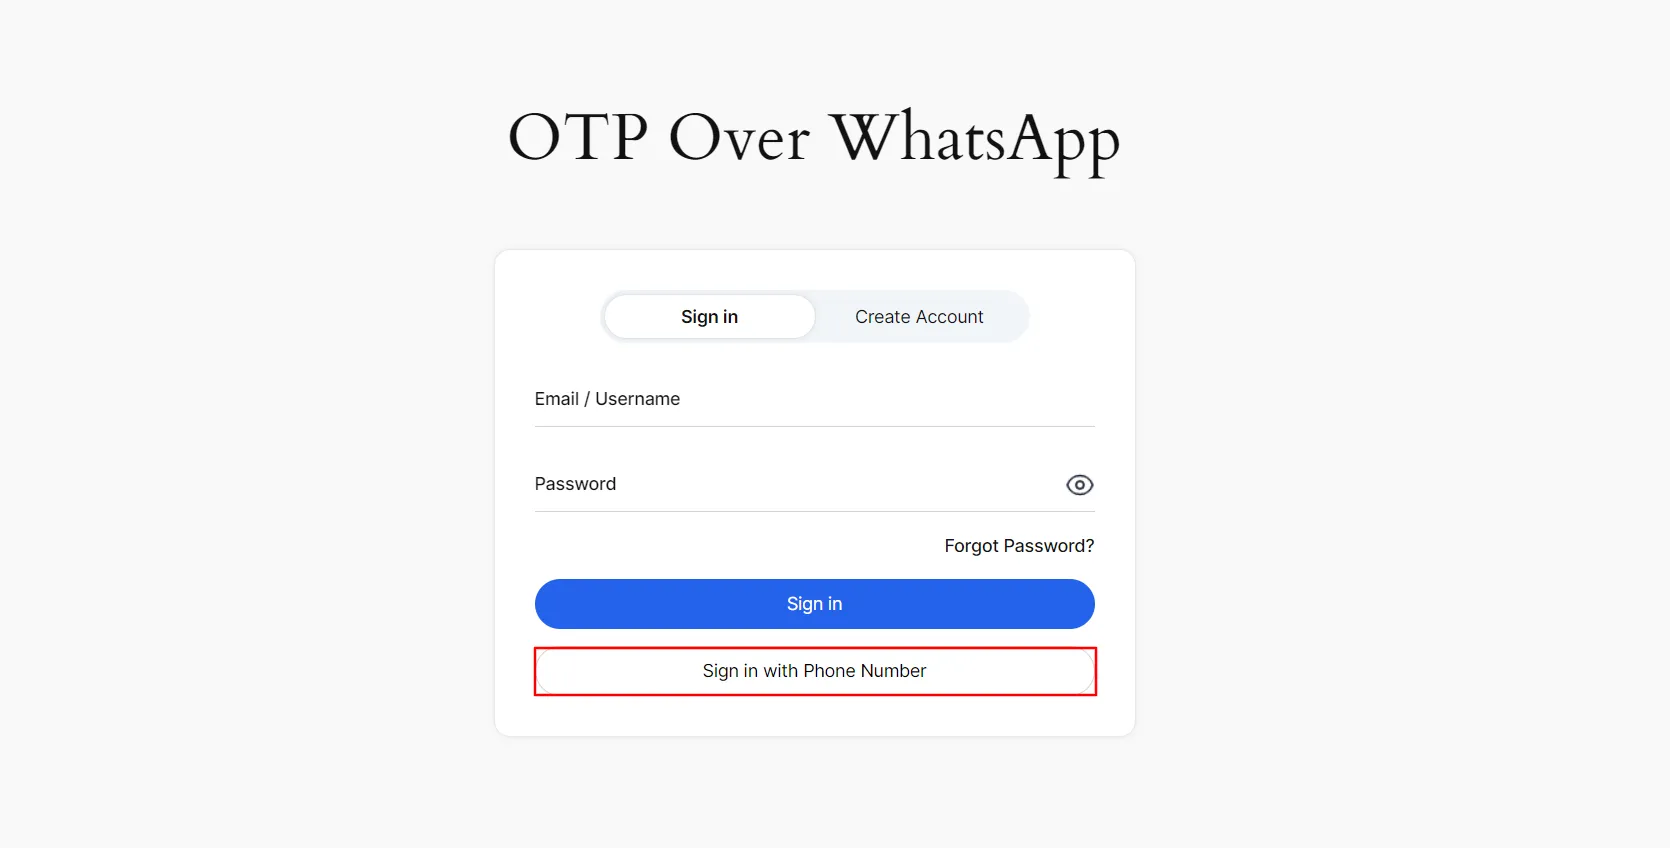 Iniciar sesión en WhatsApp con OTP: haga clic en iniciar sesión en el número de teléfono